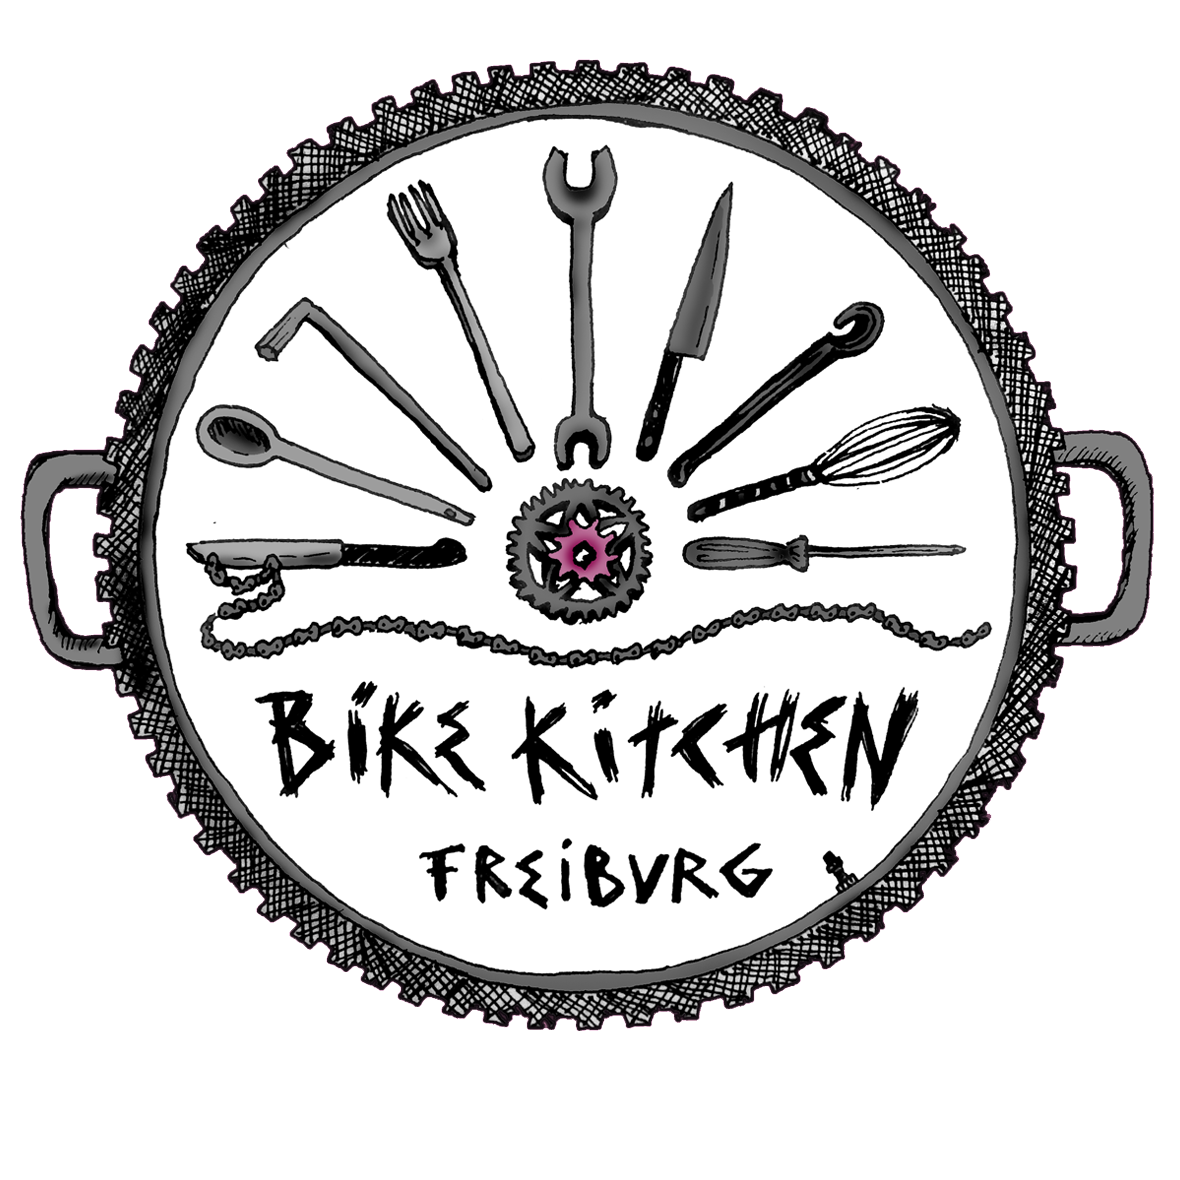 Bike-Kitchen